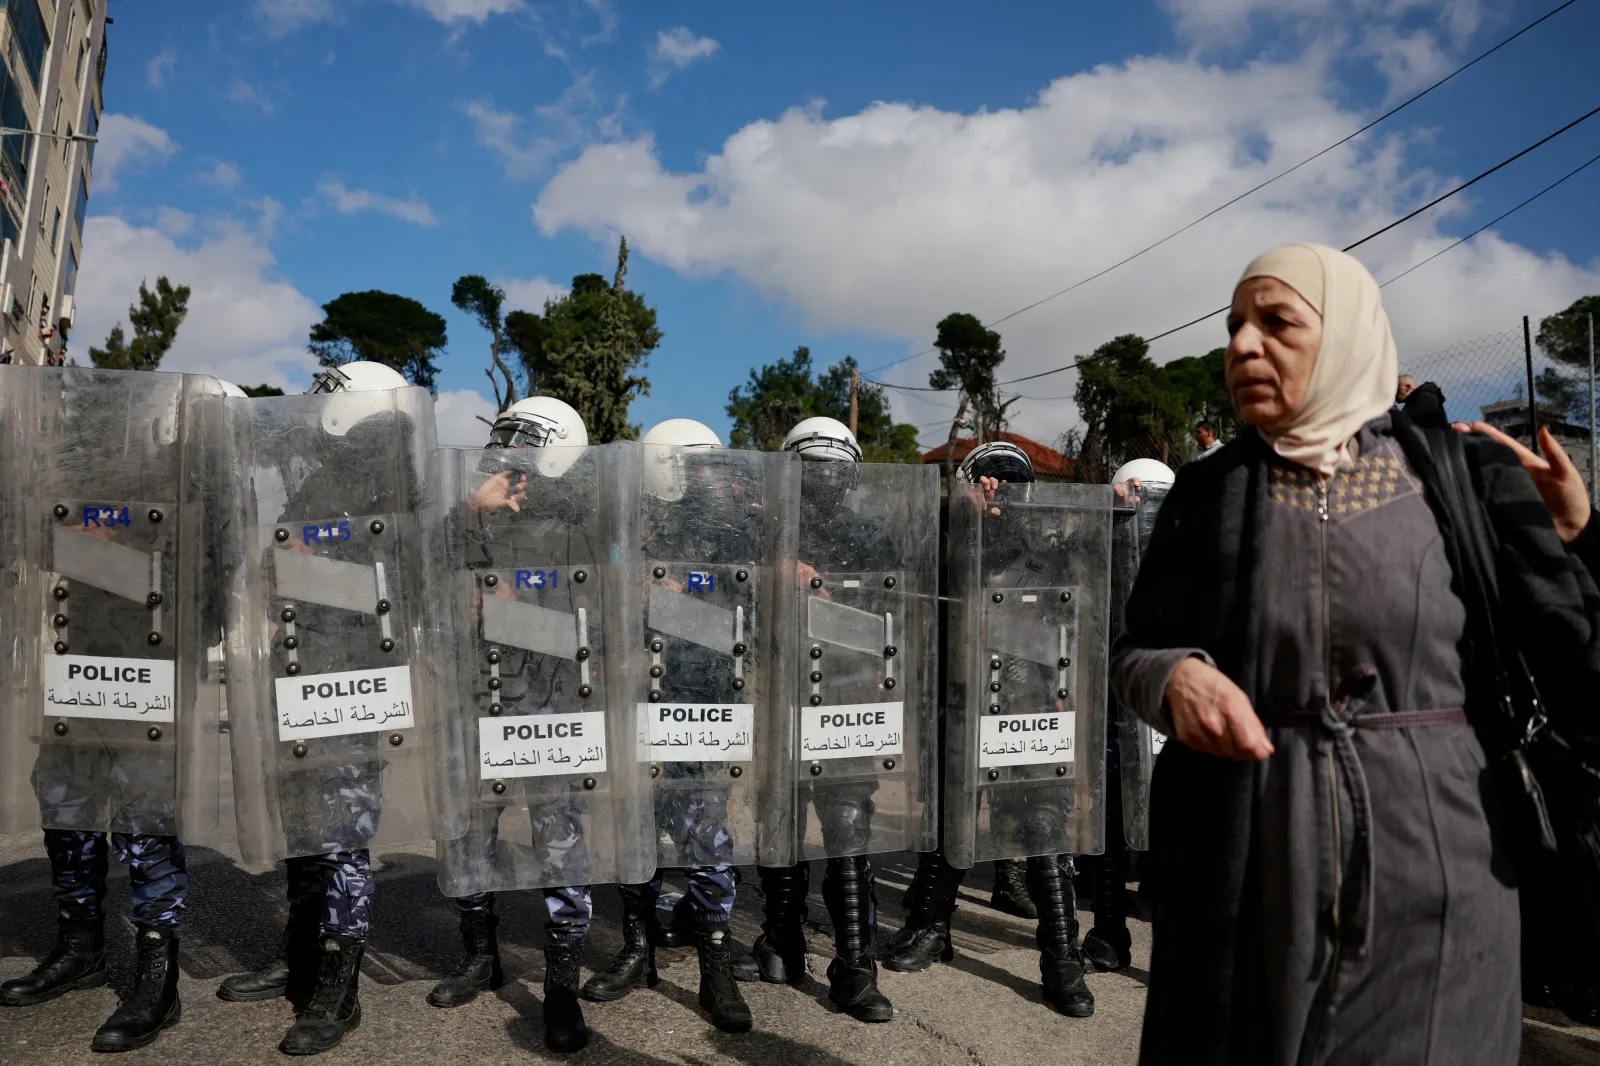 شرطة مكافحة الشغب تشرف على تظاهرة لدعم سكان غزة، رام الله، الضفة الغربية، يناير (كانون الثاني) 2024 (عمار عوض/ رويترز)